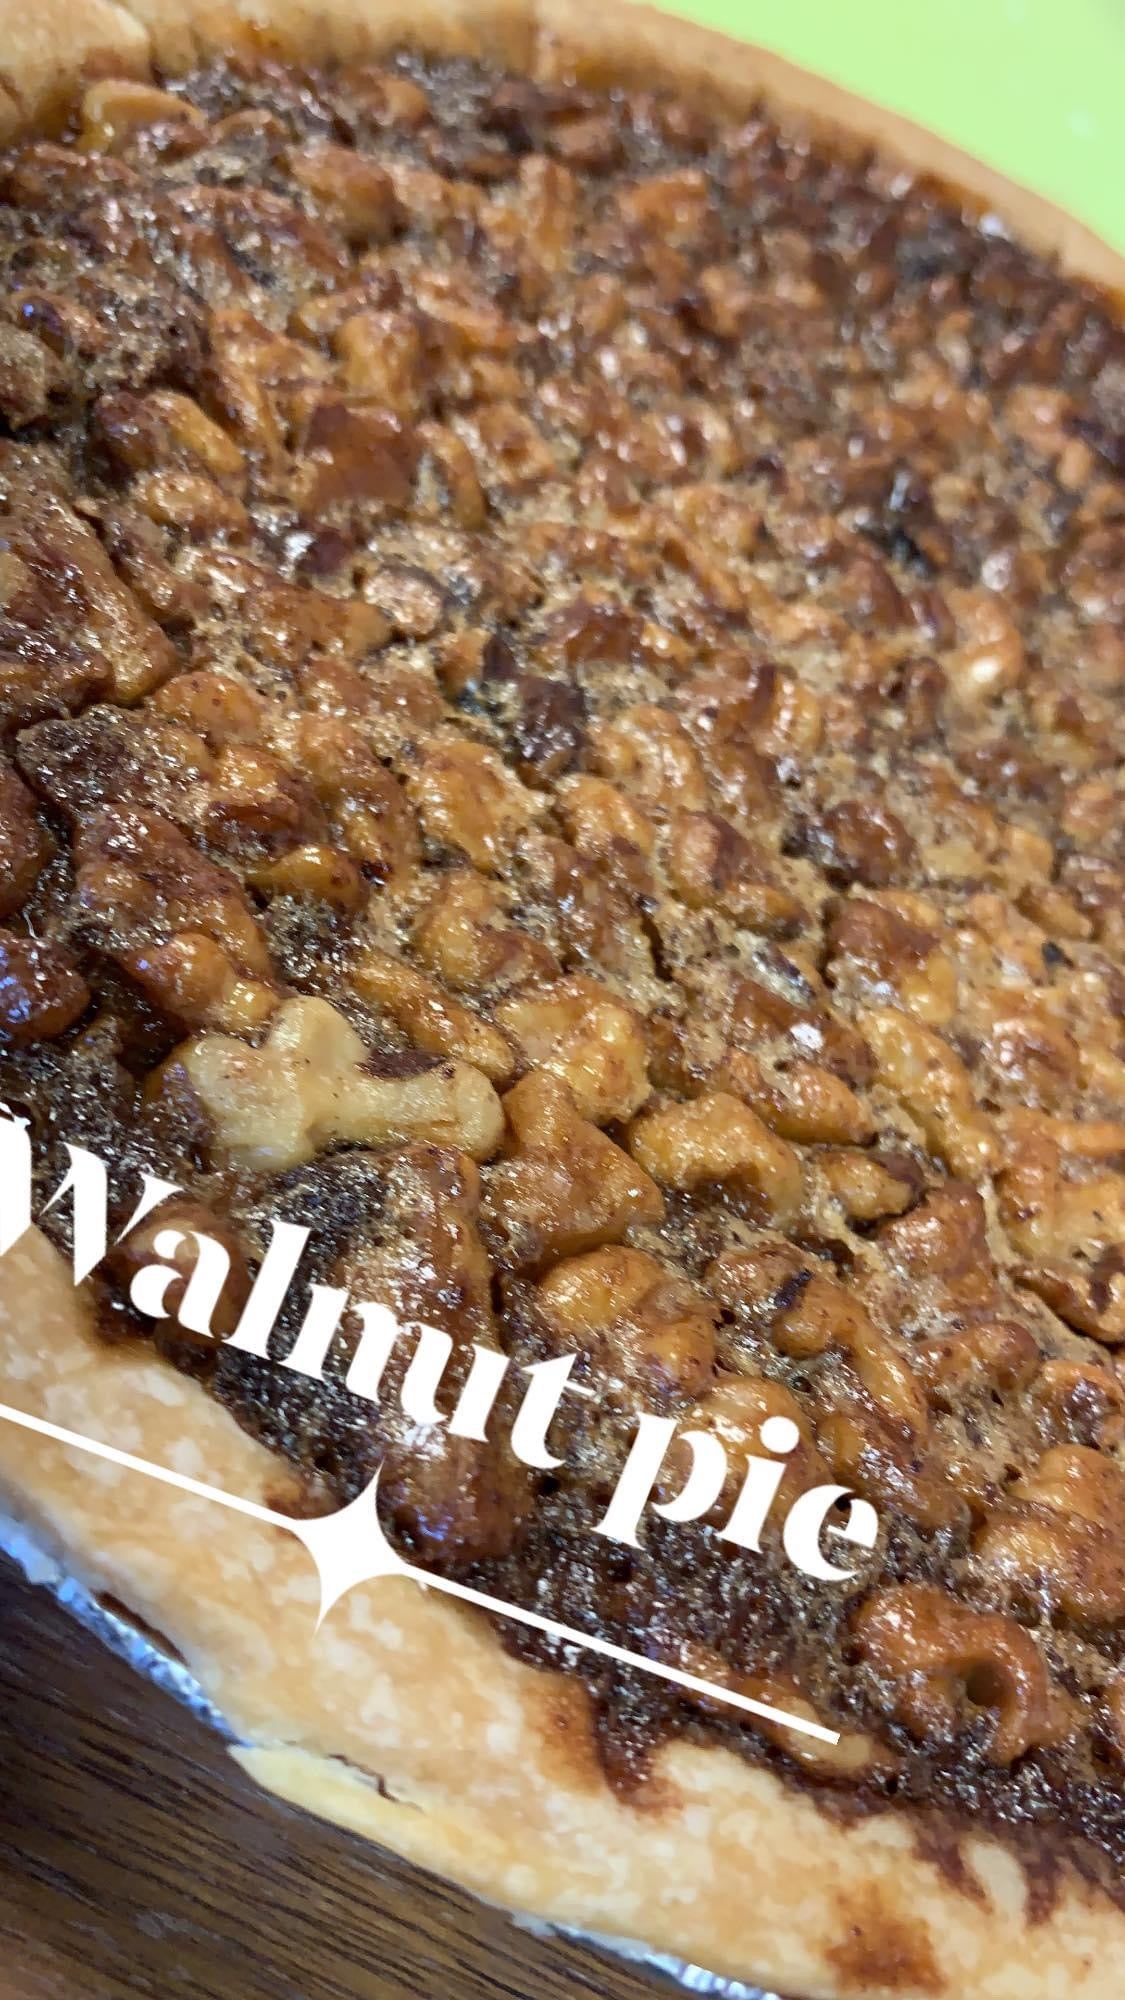 Walnut Pie